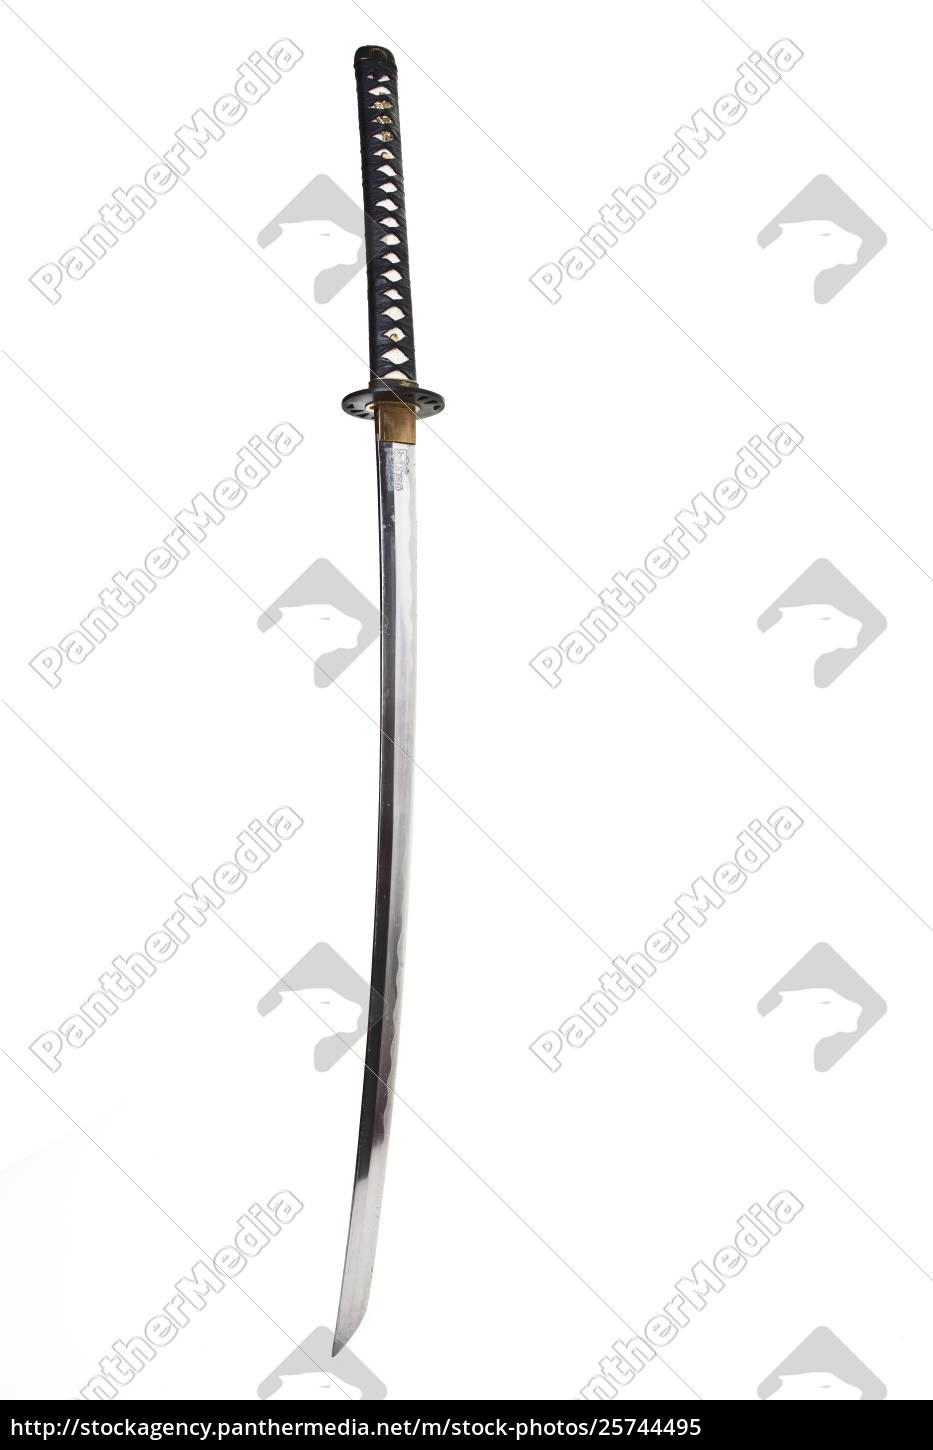 espada samurai katana - Foto de archivo #25744495